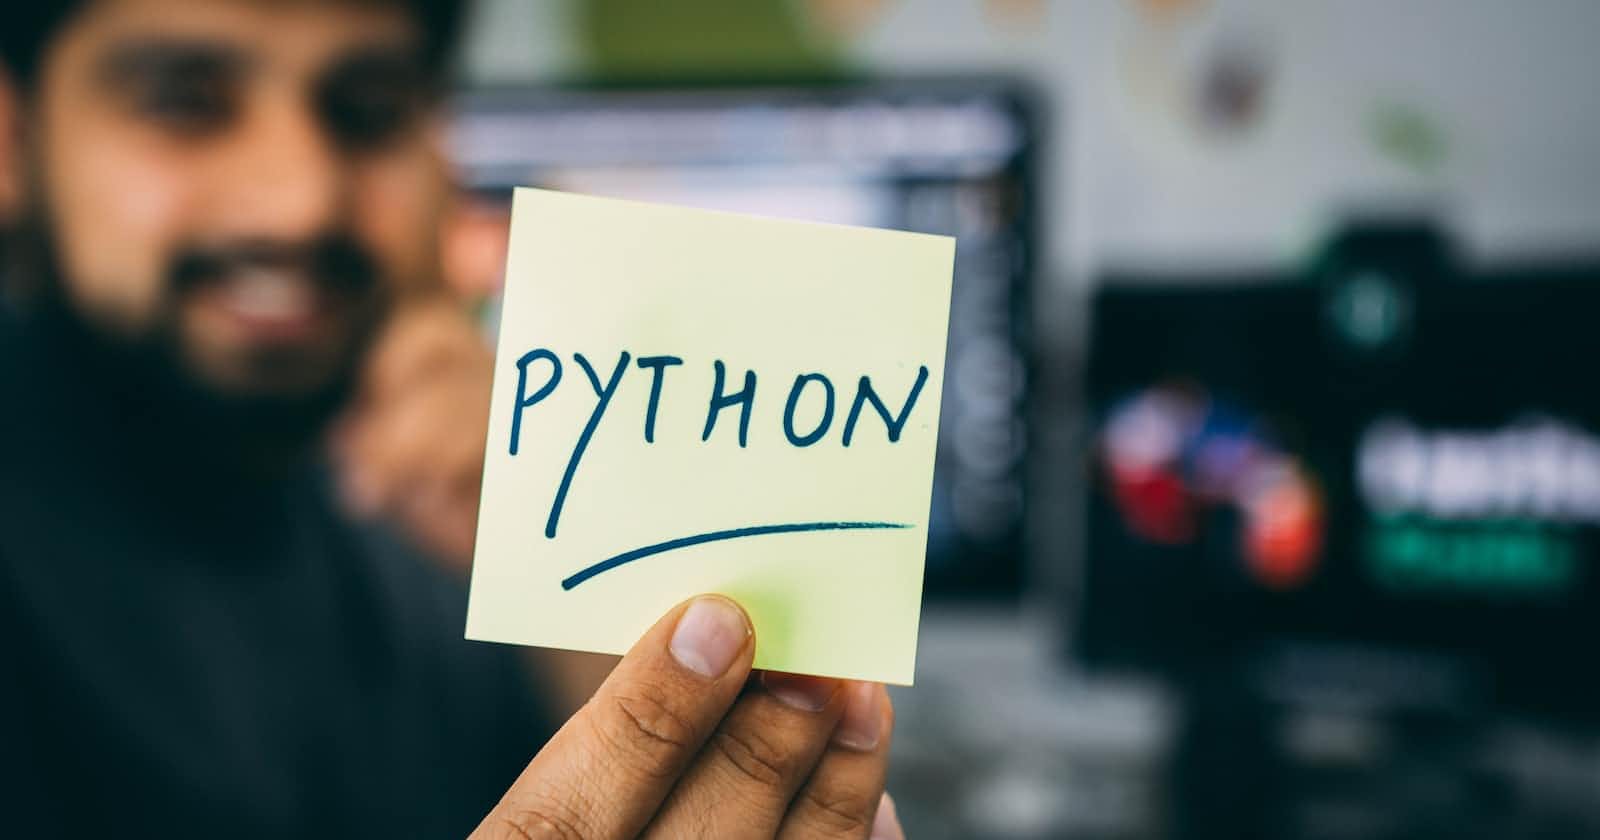 Day 13 Task: Basics of Python